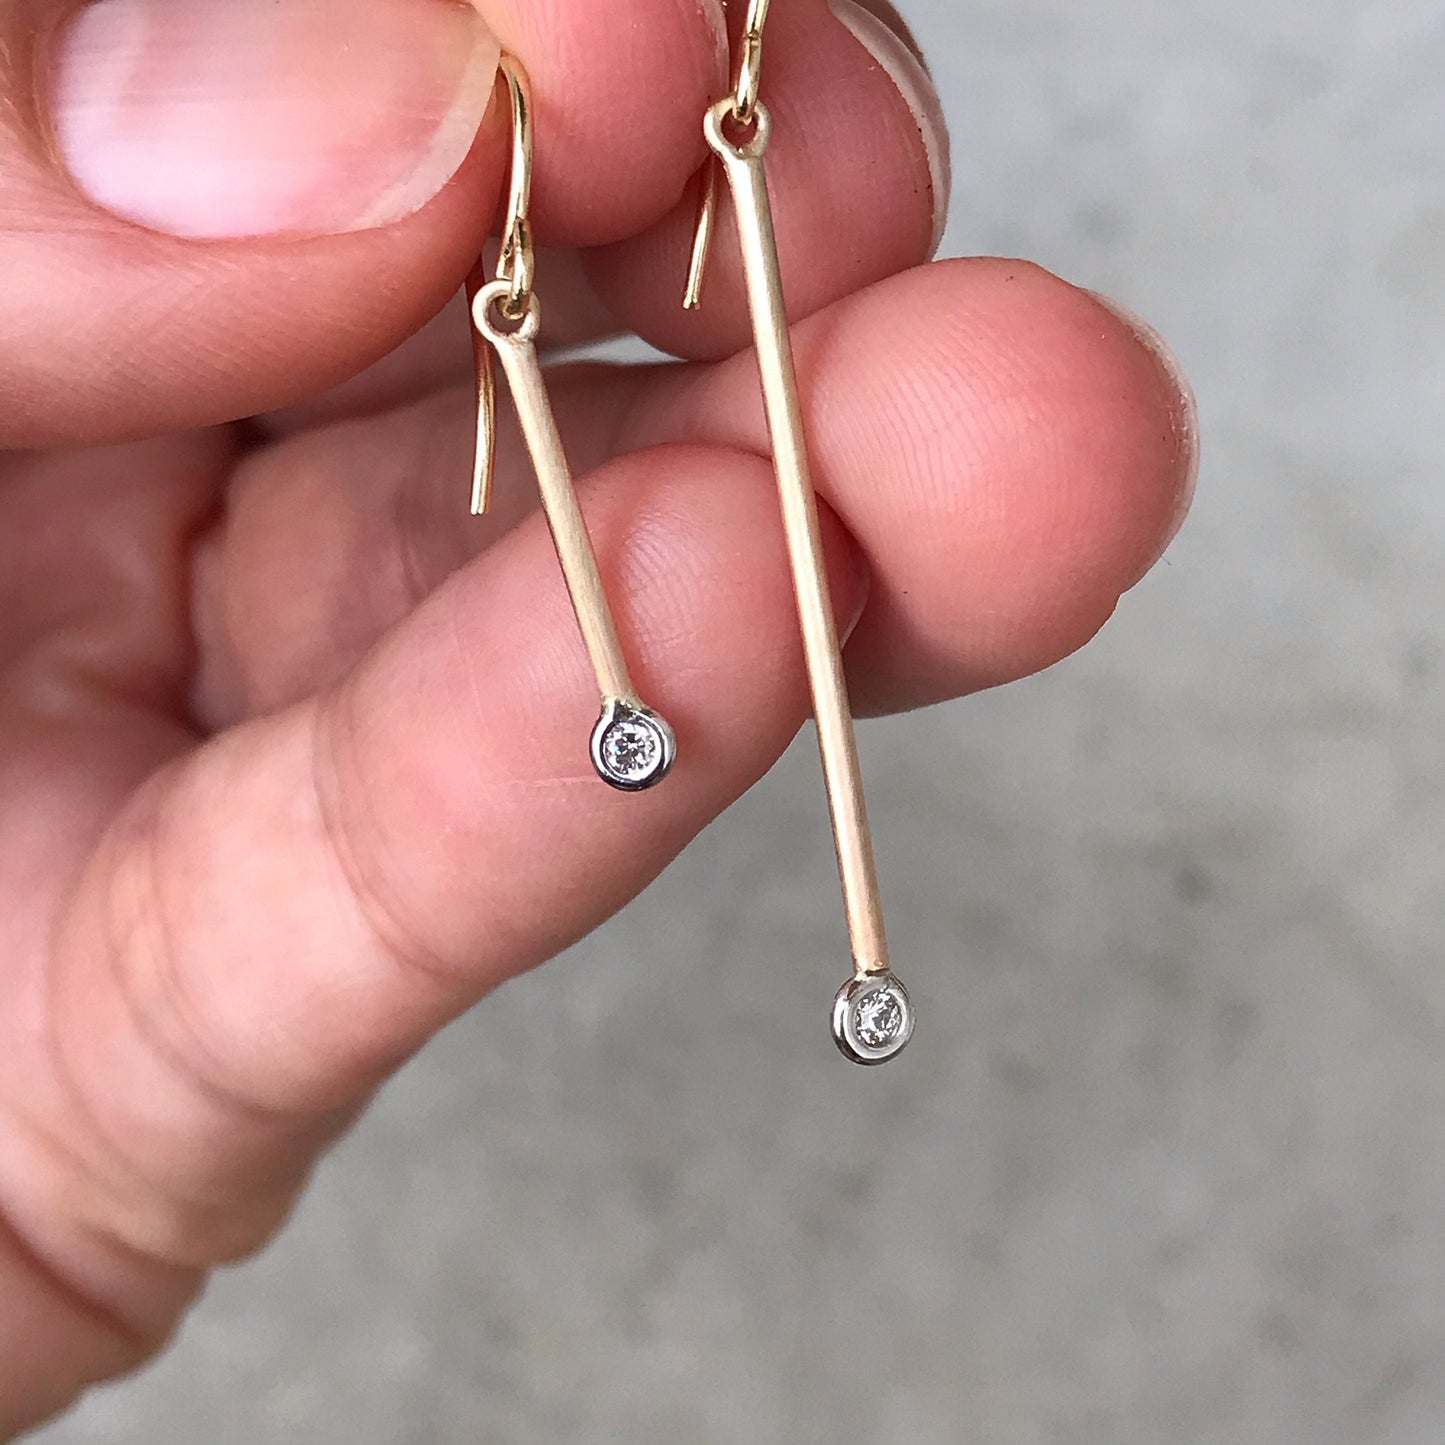 Pendulum Minimalist Rose Gold Diamond Earrings-earrings-NIXIN-Petite Pair-14k Rose Gold-Satin Finish-NIXIN